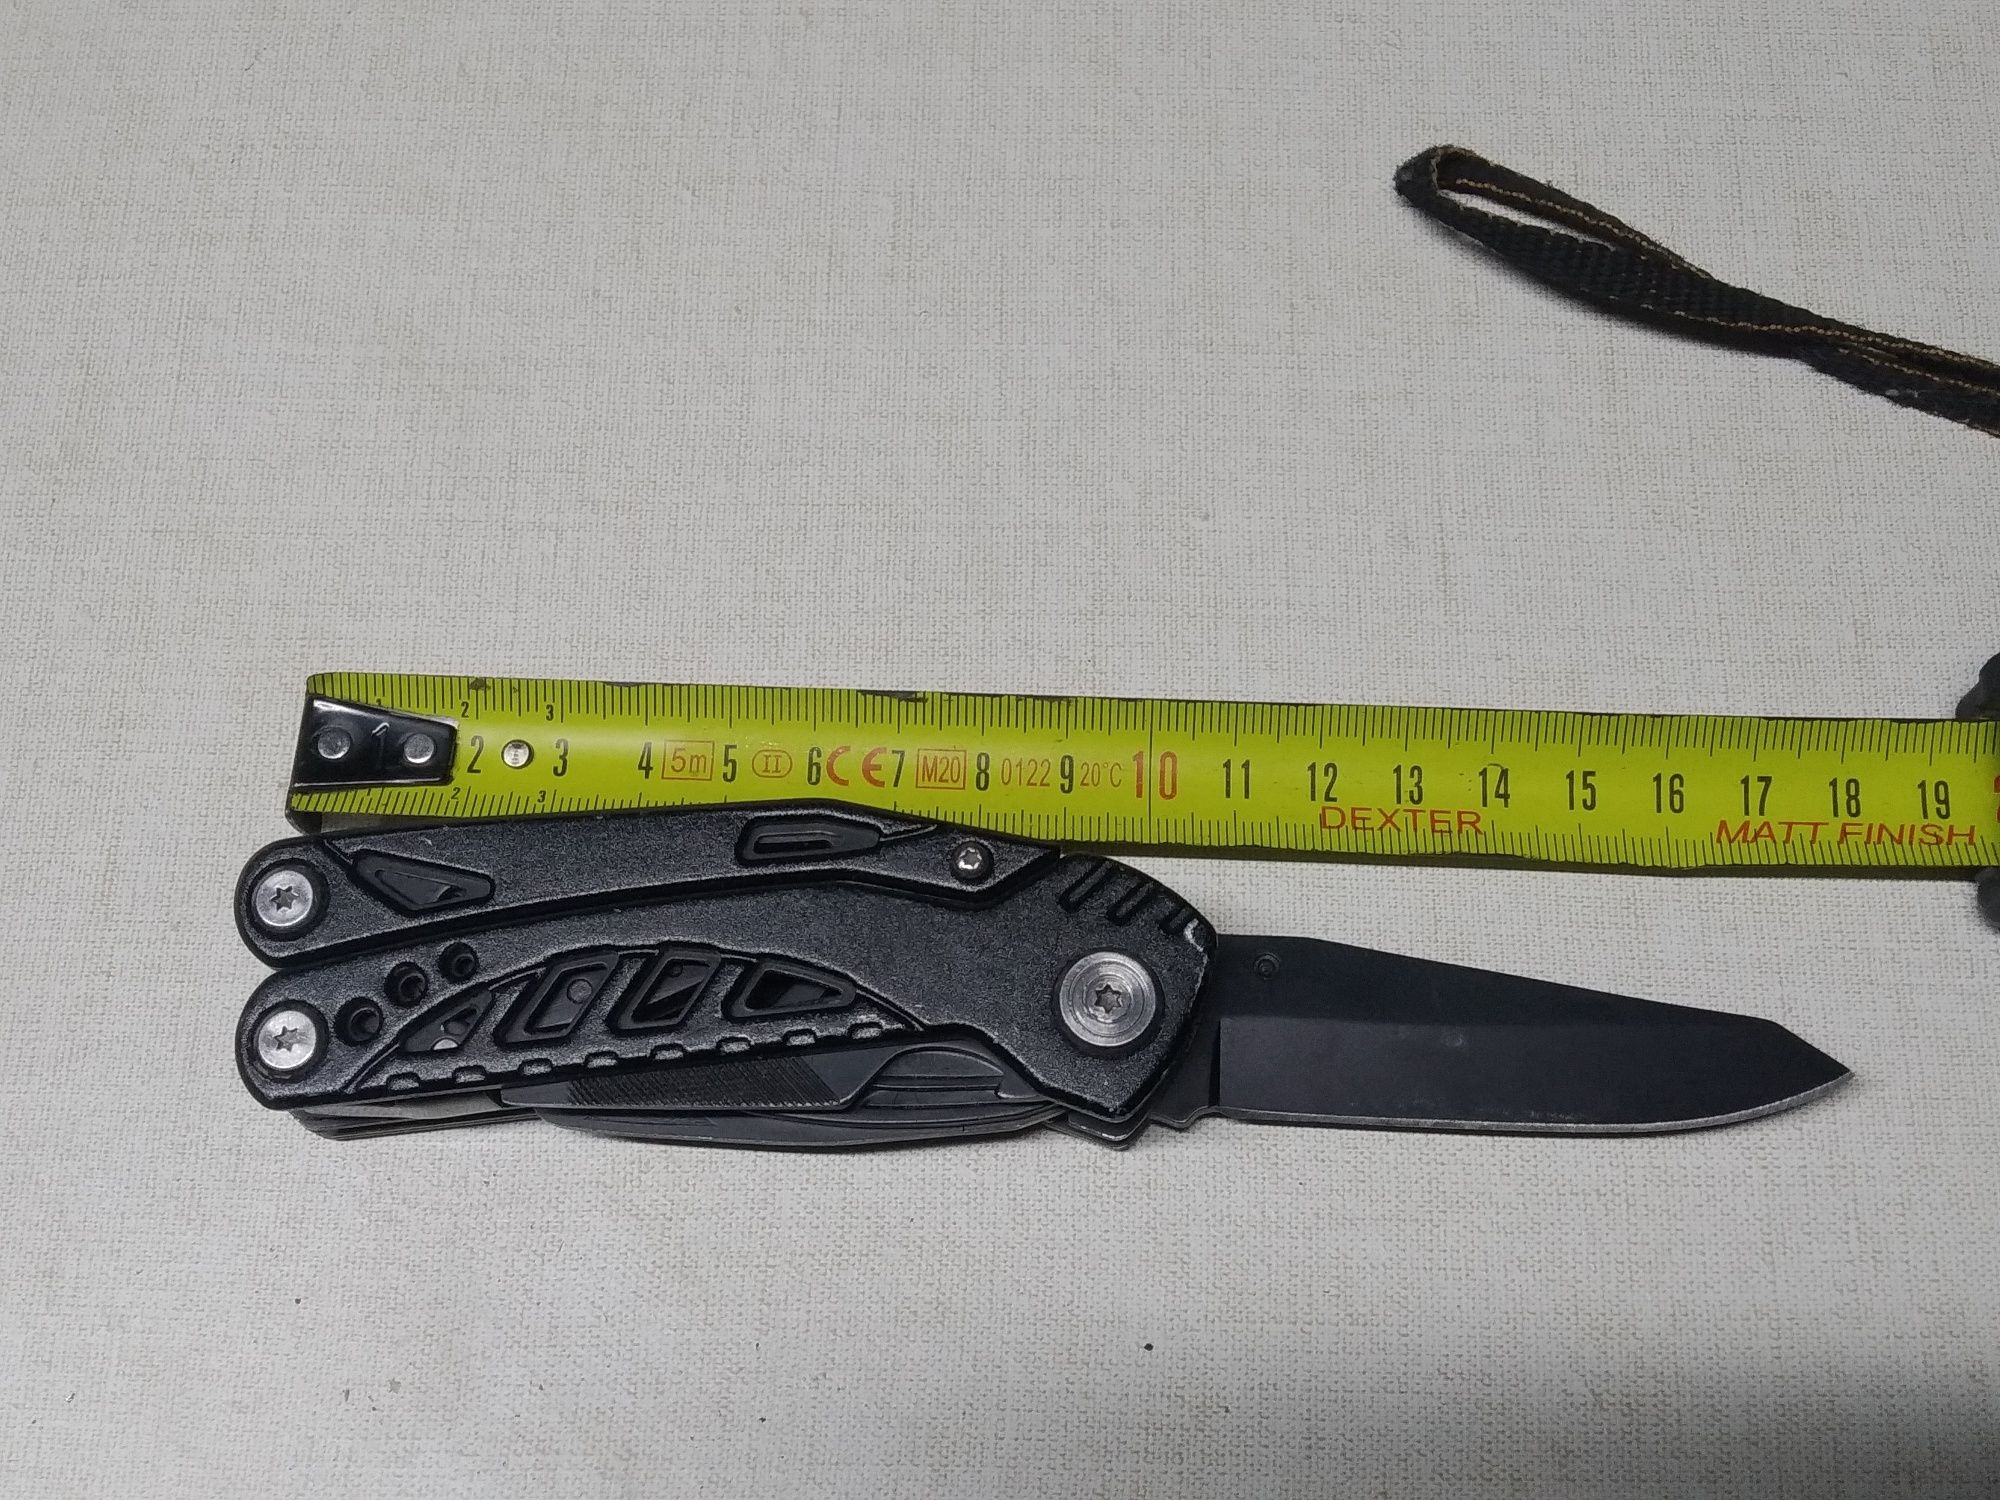 Multitoll nóż kombinerki wielefunkcyjny